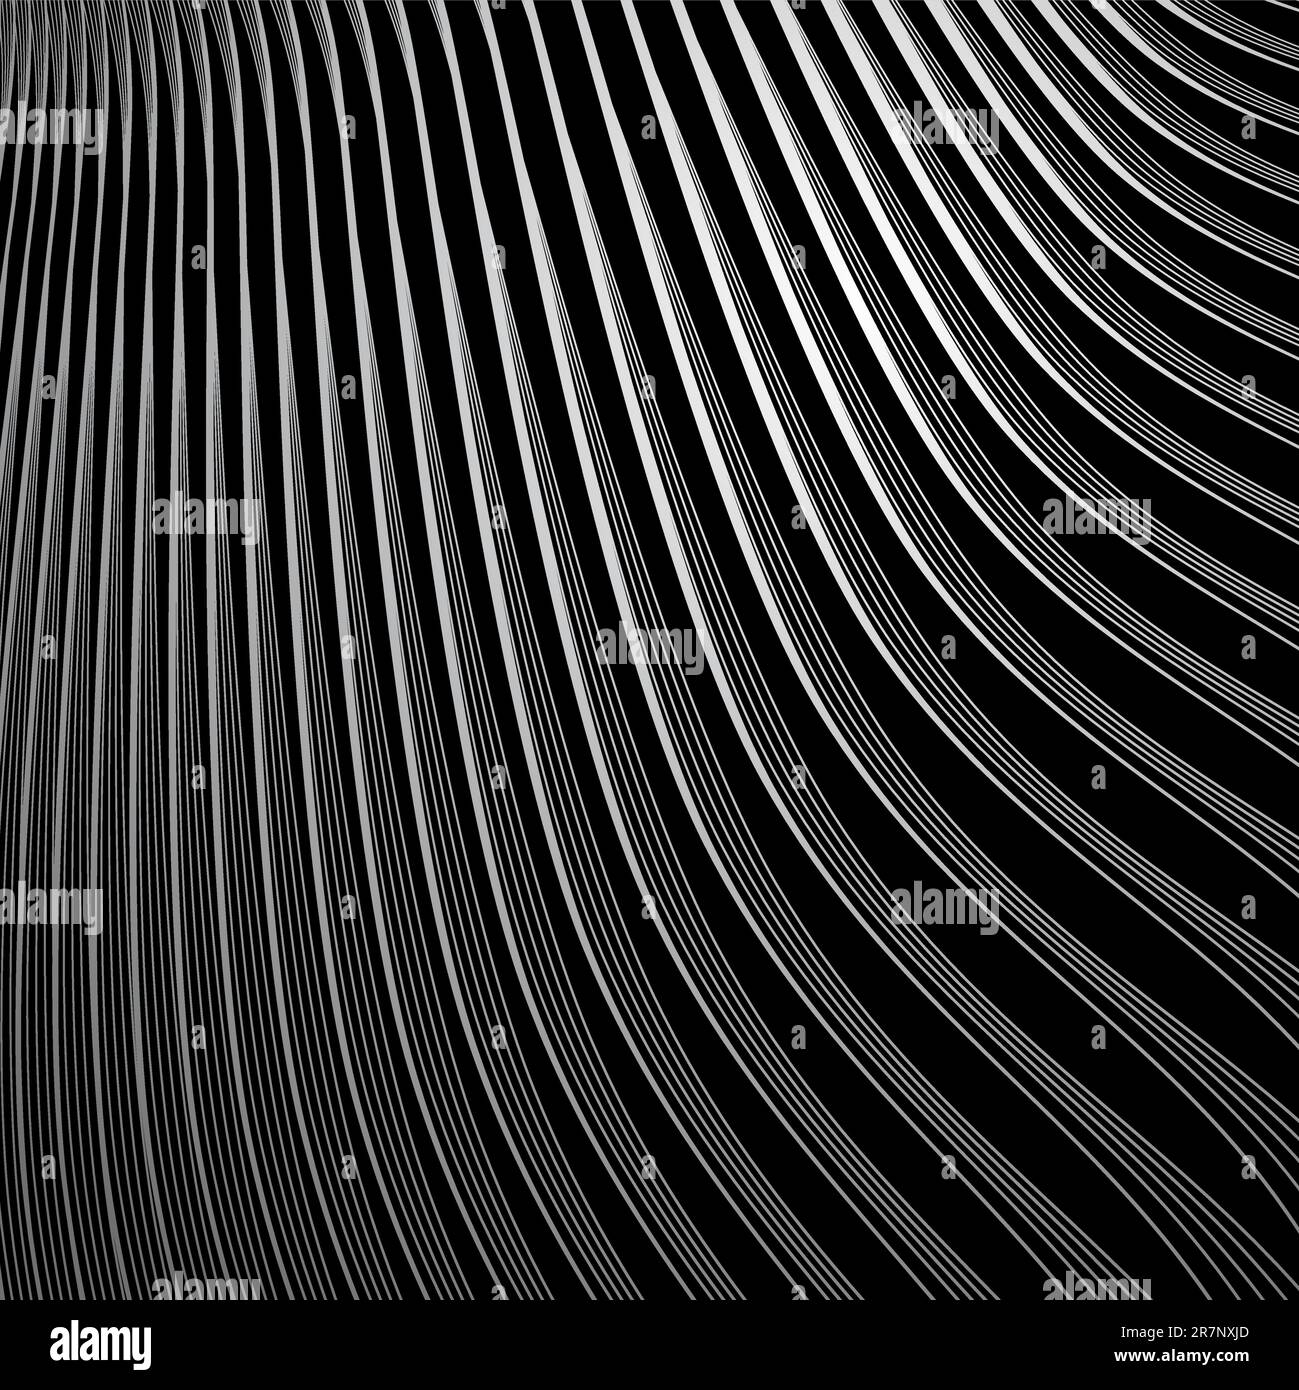 Adobe illustrator texture Banque d'images noir et blanc - Alamy